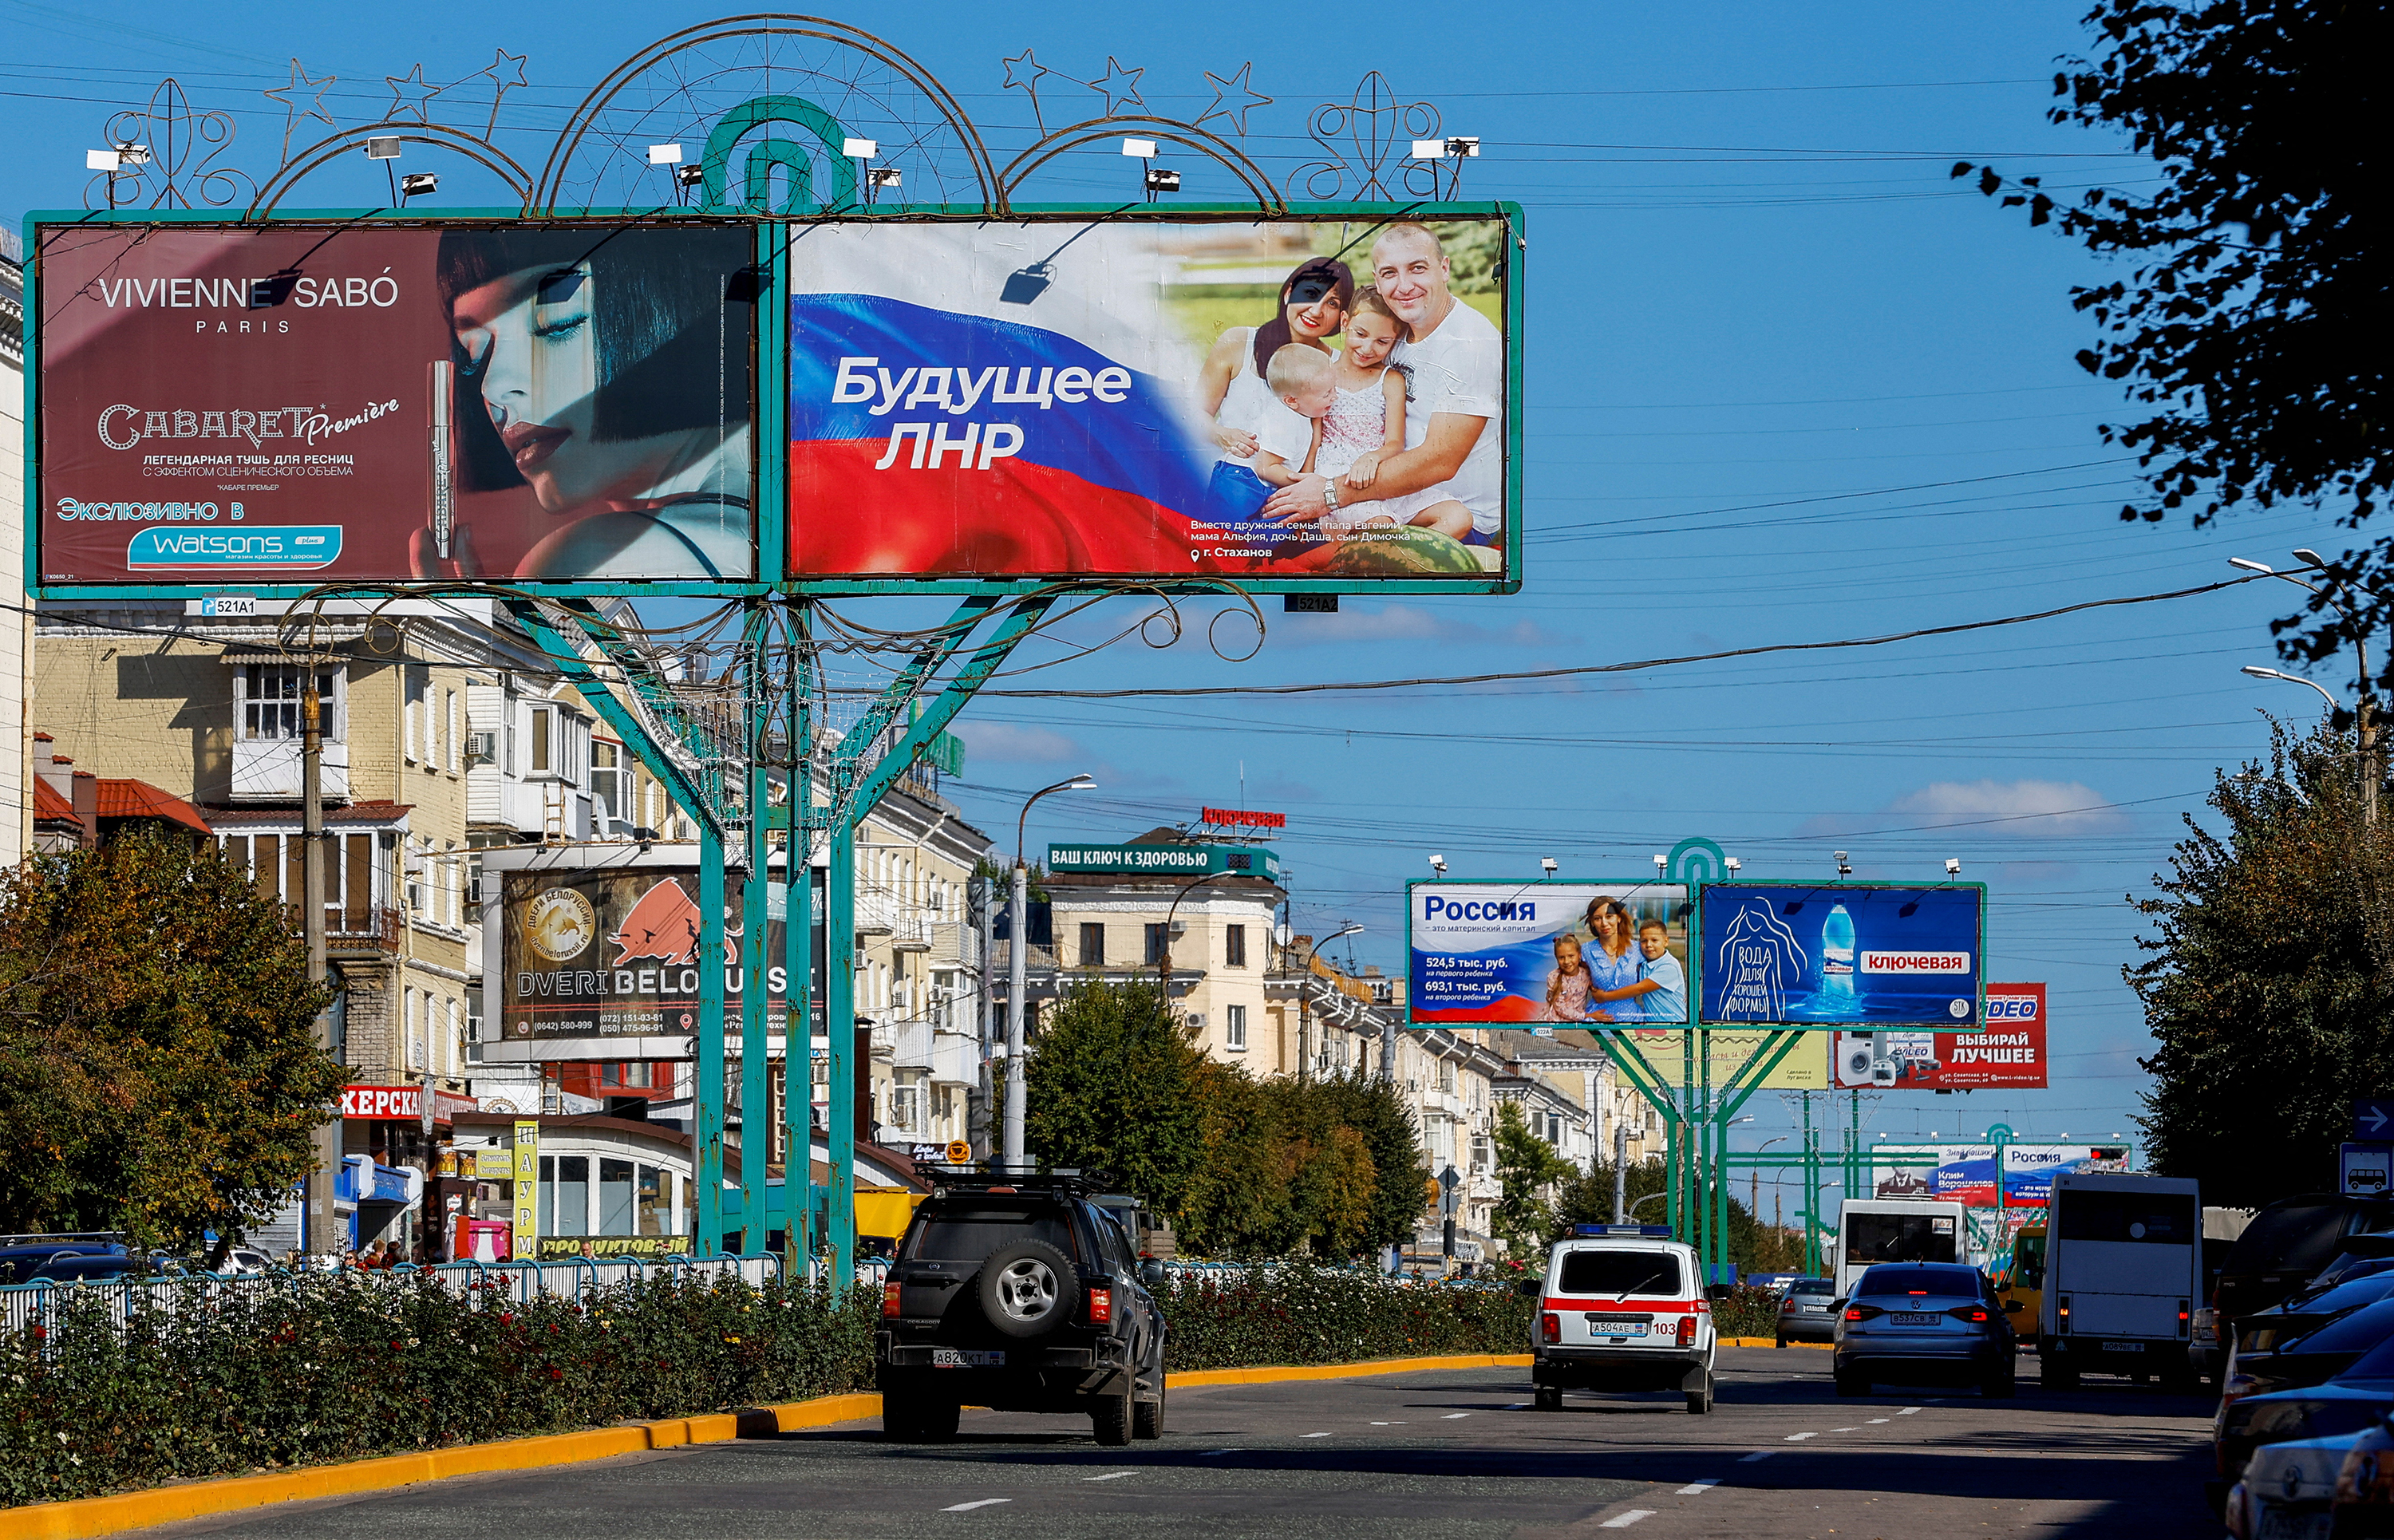 ยานพาหนะขับผ่านป้ายโฆษณา ซึ่งรวมถึงแผงที่แสดงสโลแกนที่สนับสนุนรัสเซีย บนถนนท่ามกลางความขัดแย้งรัสเซีย-ยูเครนในเมืองลูฮันสค์ ประเทศยูเครน เมื่อวันที่ 20 กันยายน